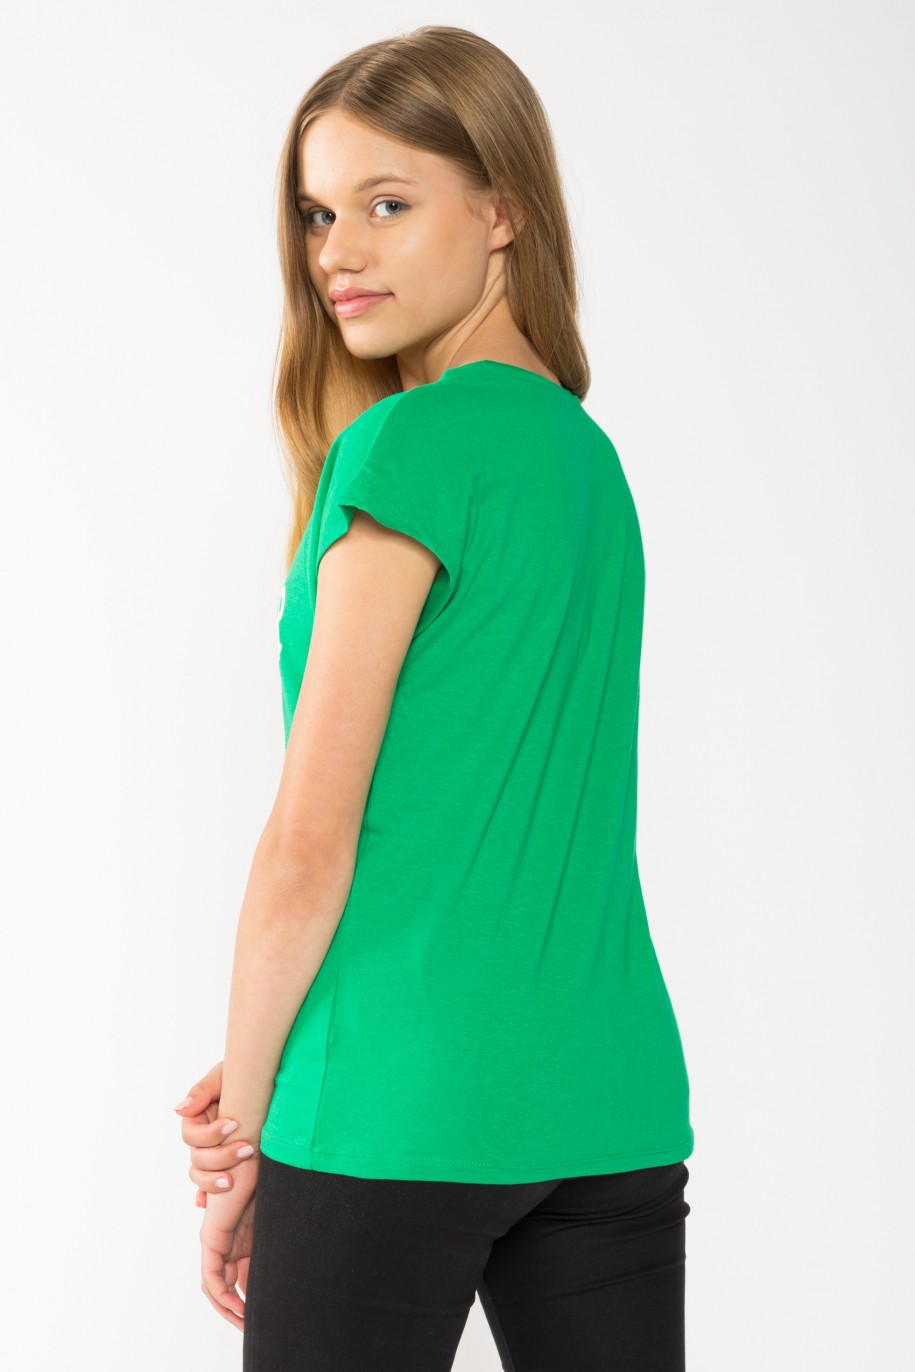 Zielony świąteczny T-shirt dla dziewczyny OFFICIAL COOKIE TESTER - 44852